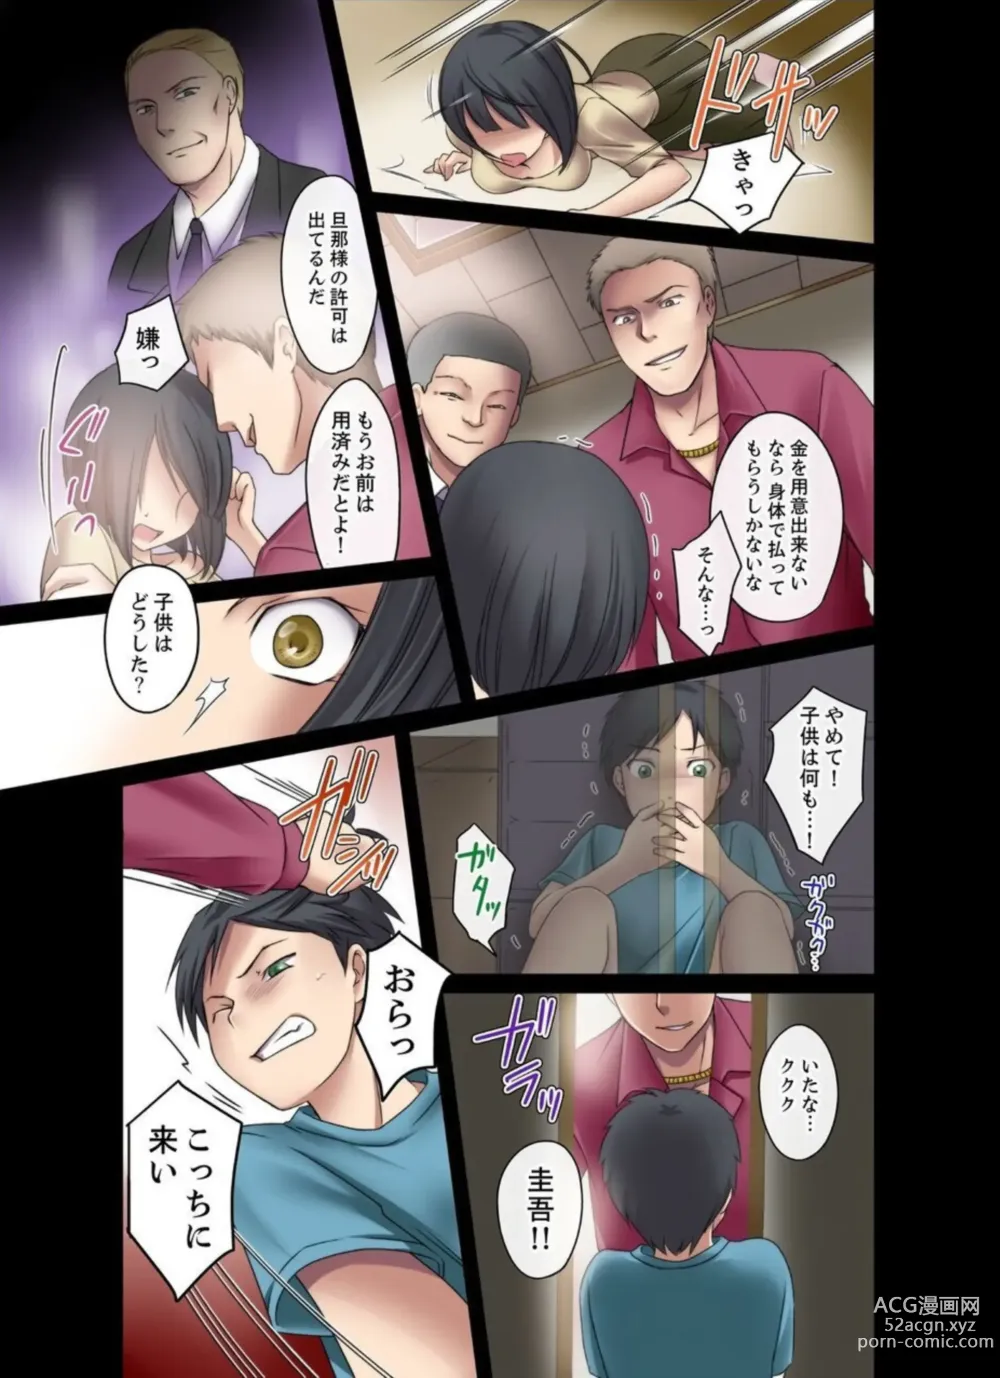 Page 25 of manga Seitokaishitsu wa Sekkusu to Biyaku ni Mamireteiru 1